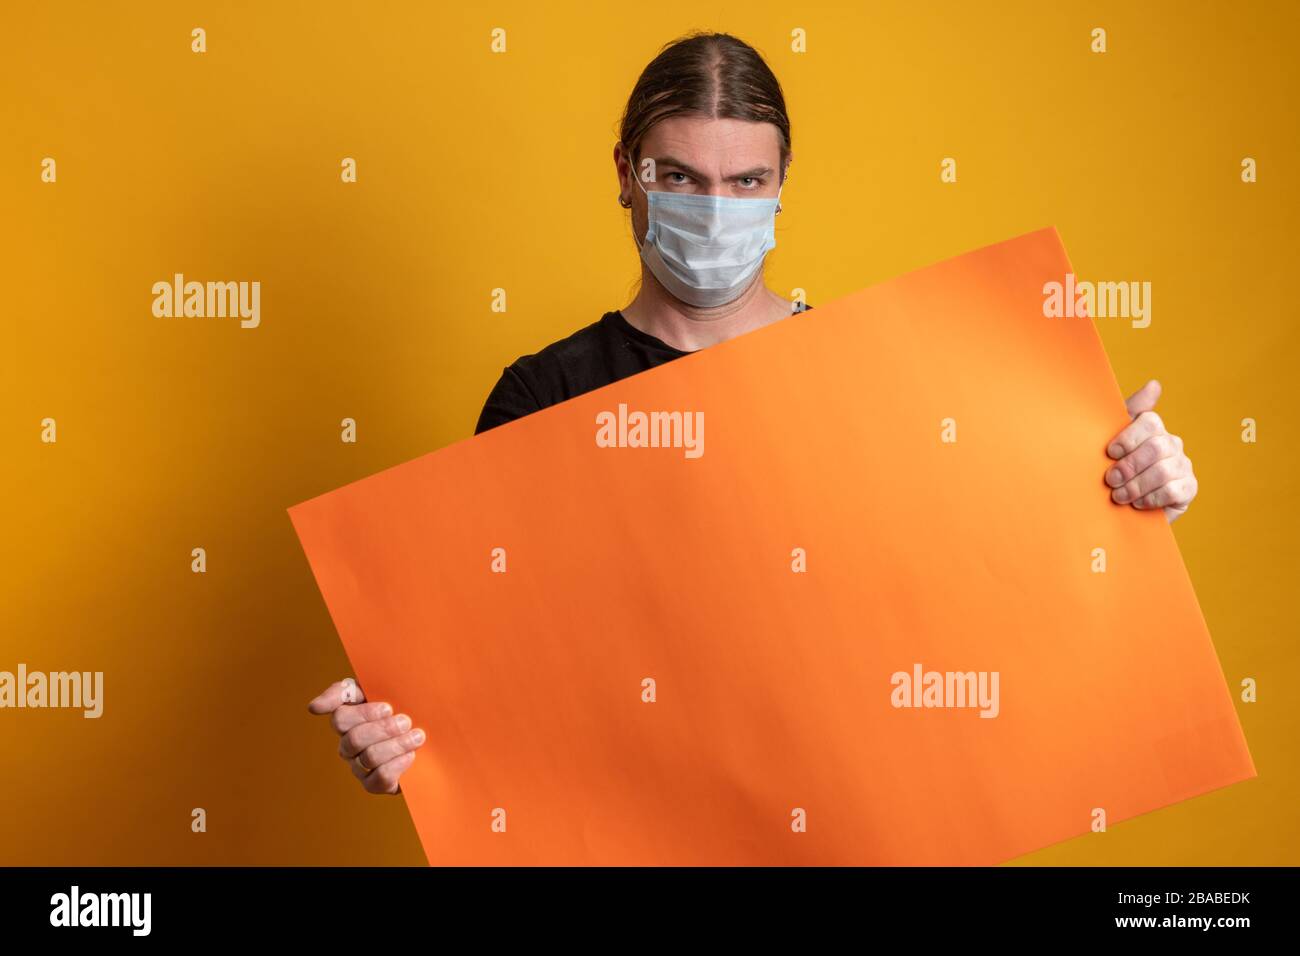 Primo piano di un giovane con maschera protettiva contro l'epidermide virale sta tenendo un cartone arancione vuoto. Spazio di copia disponibile Foto Stock